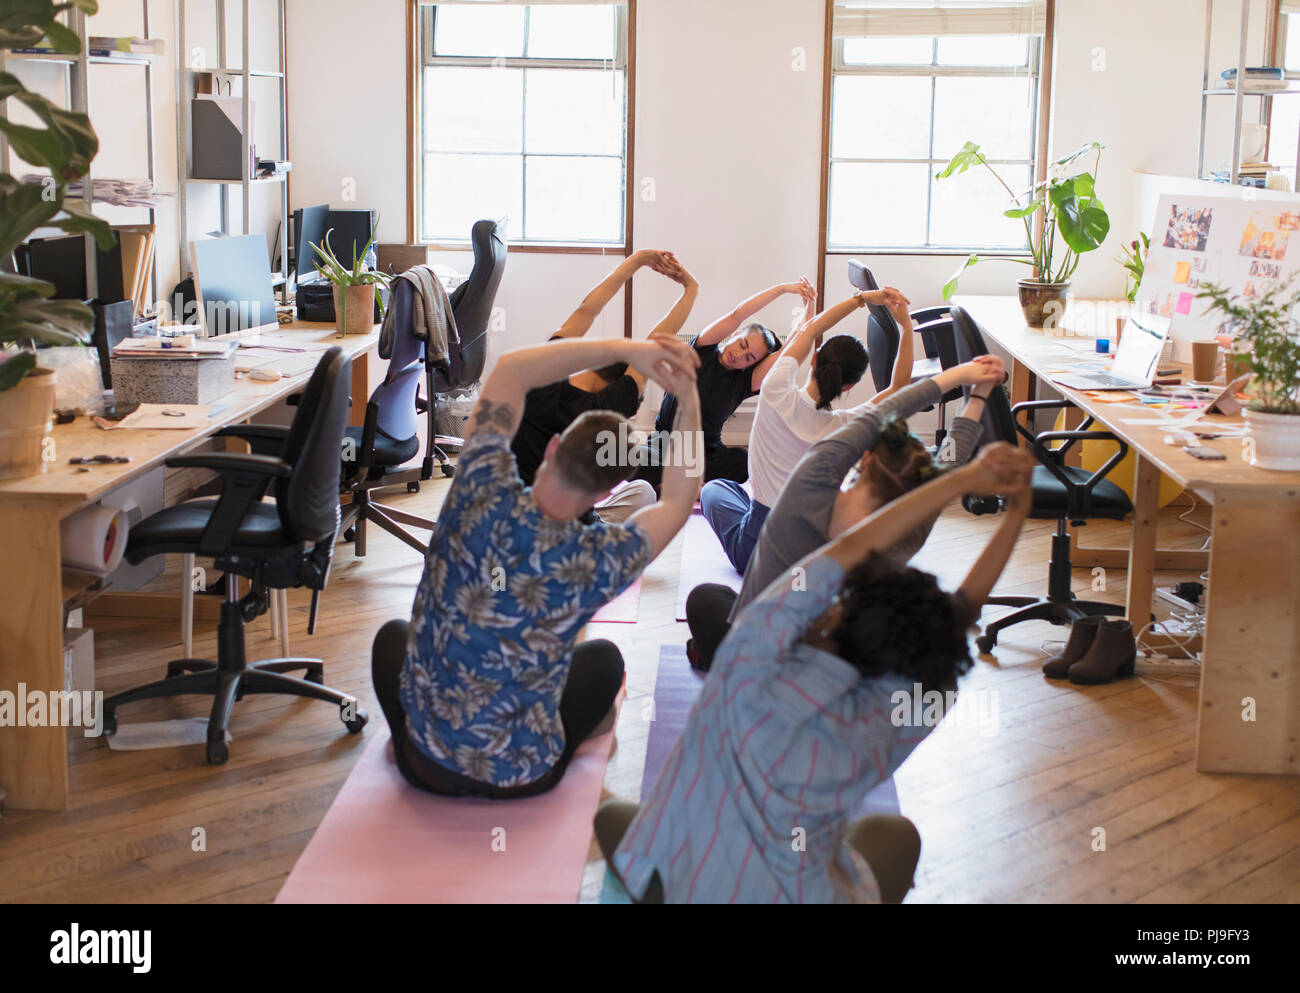 Azienda creativa persone stretching, la pratica dello yoga in ufficio Foto Stock